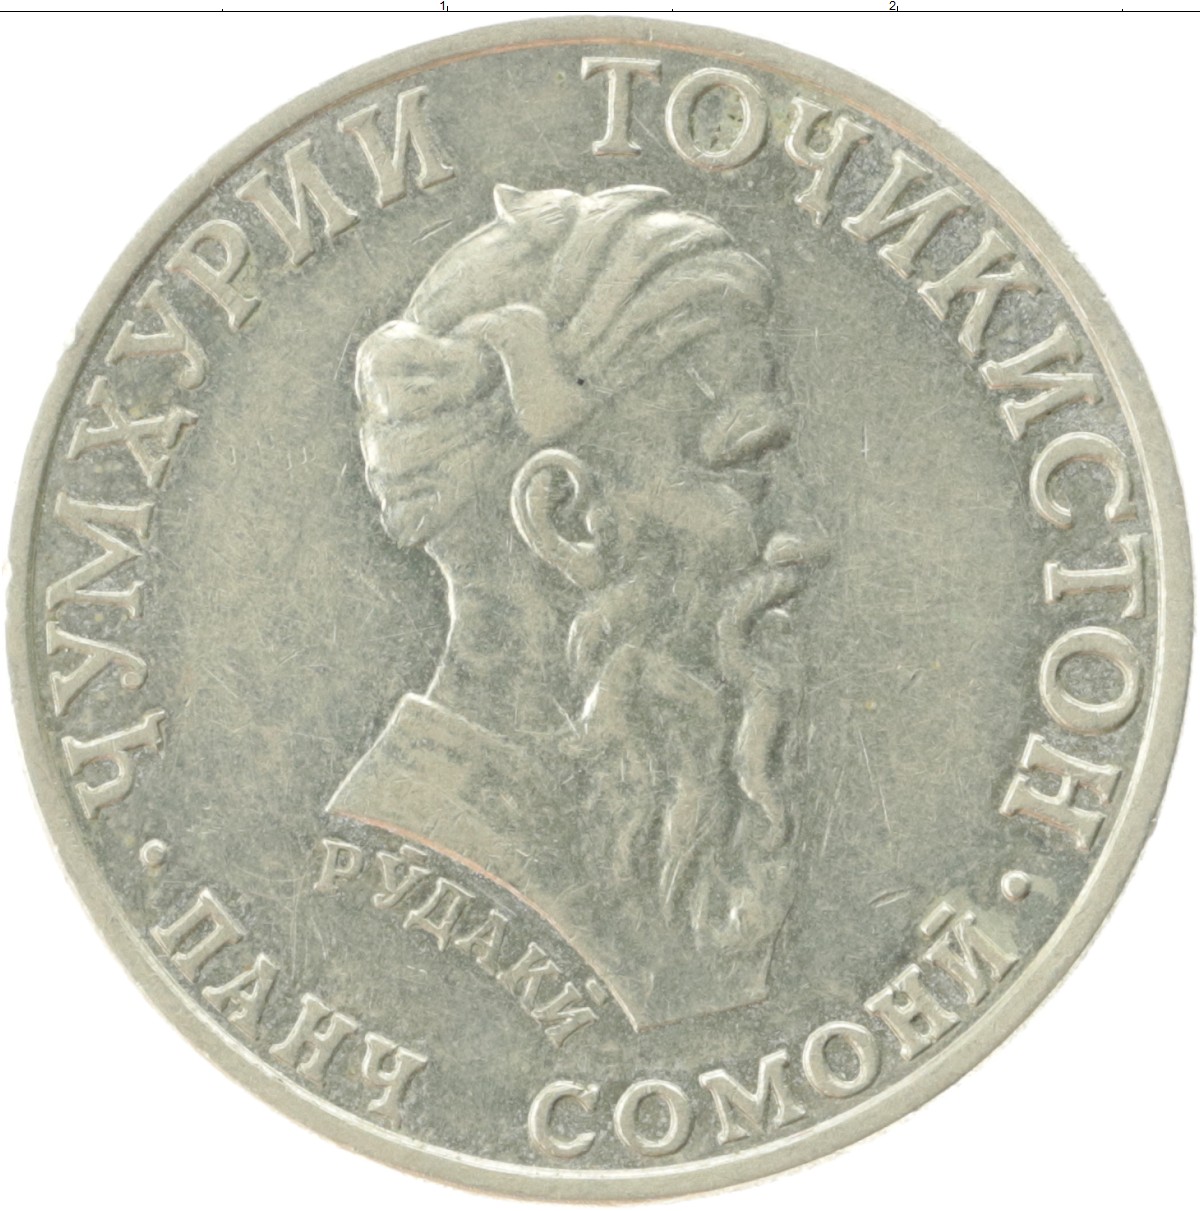 5 сомони в рублях. 500 Сомони танга монета. 5 Сомони 2001 Таджикистана. Монета Сомони Рудаки. 1 Сомони монета.